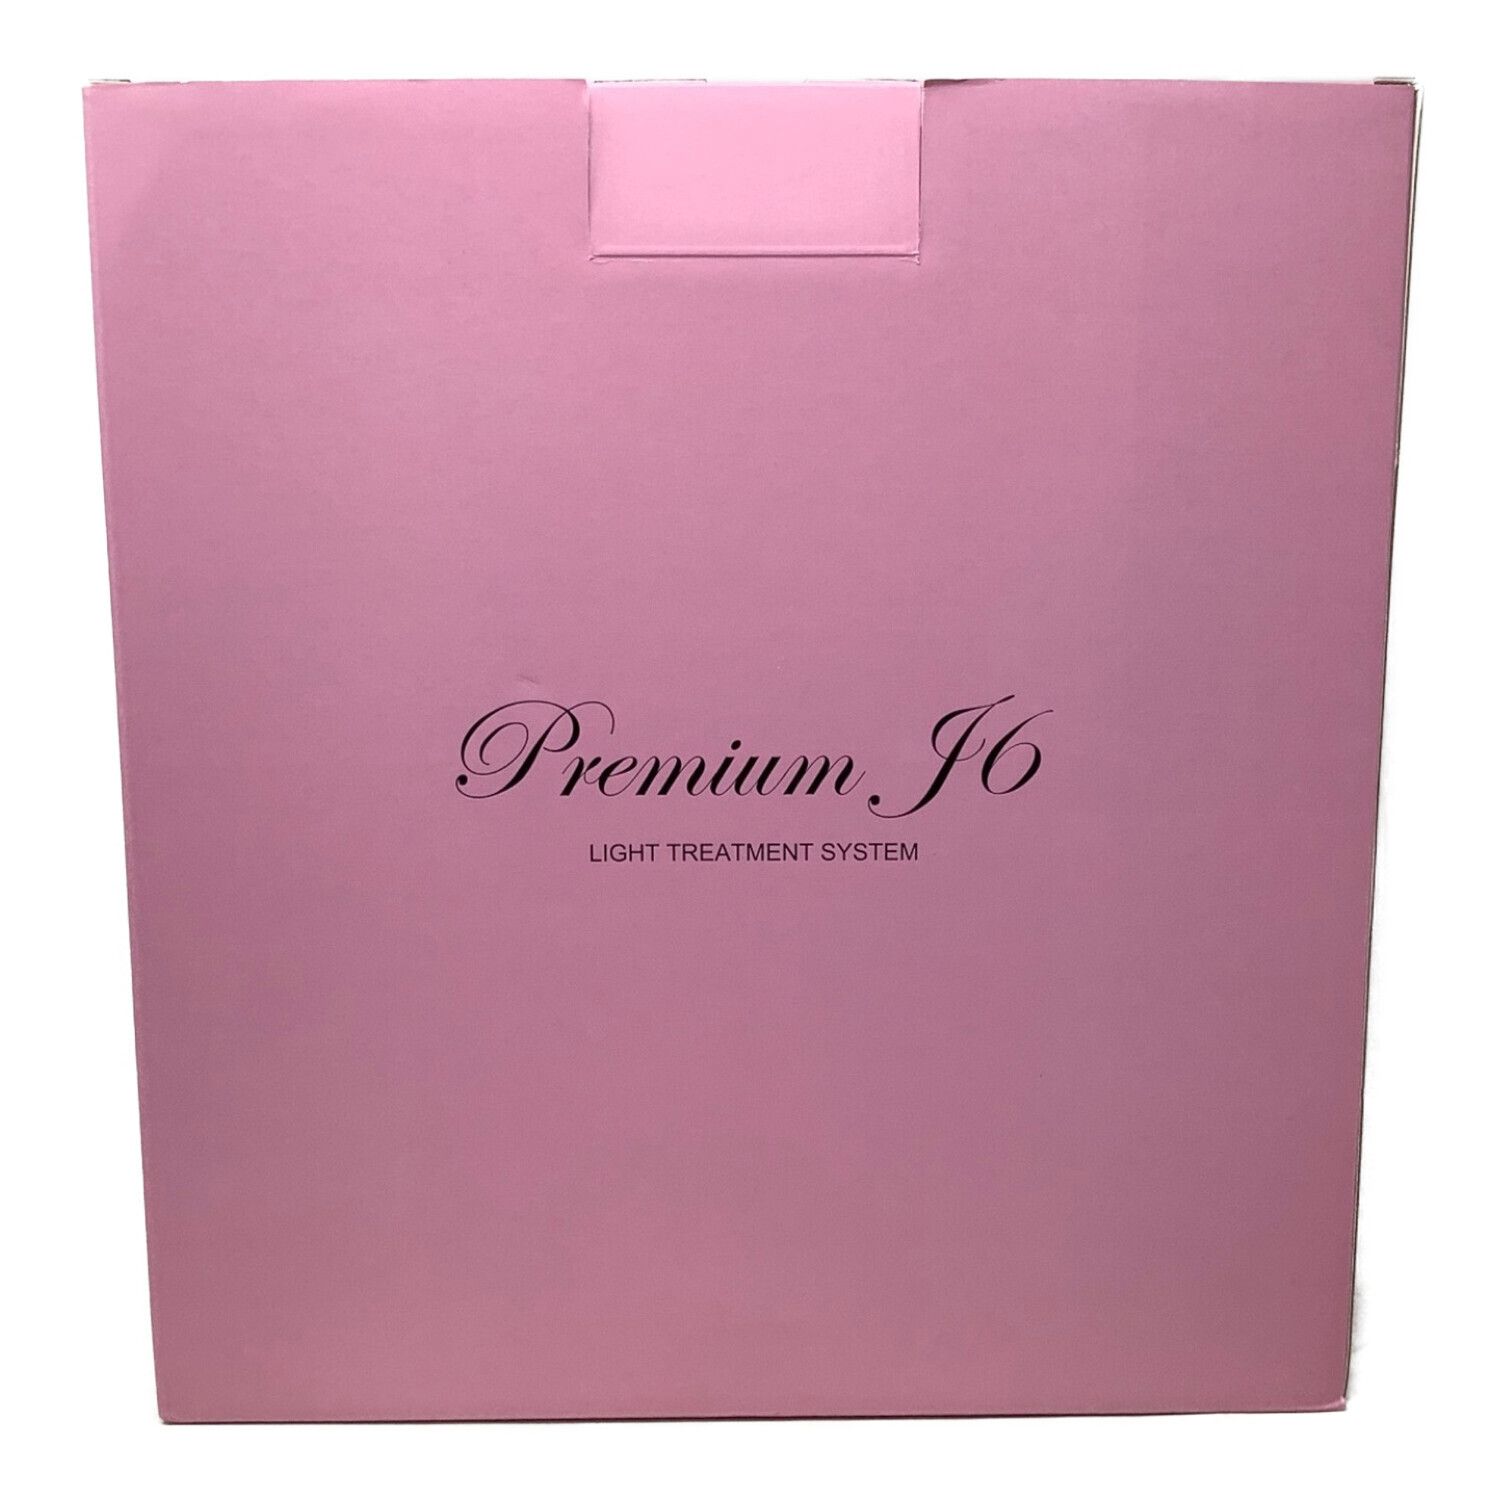 Premium J6